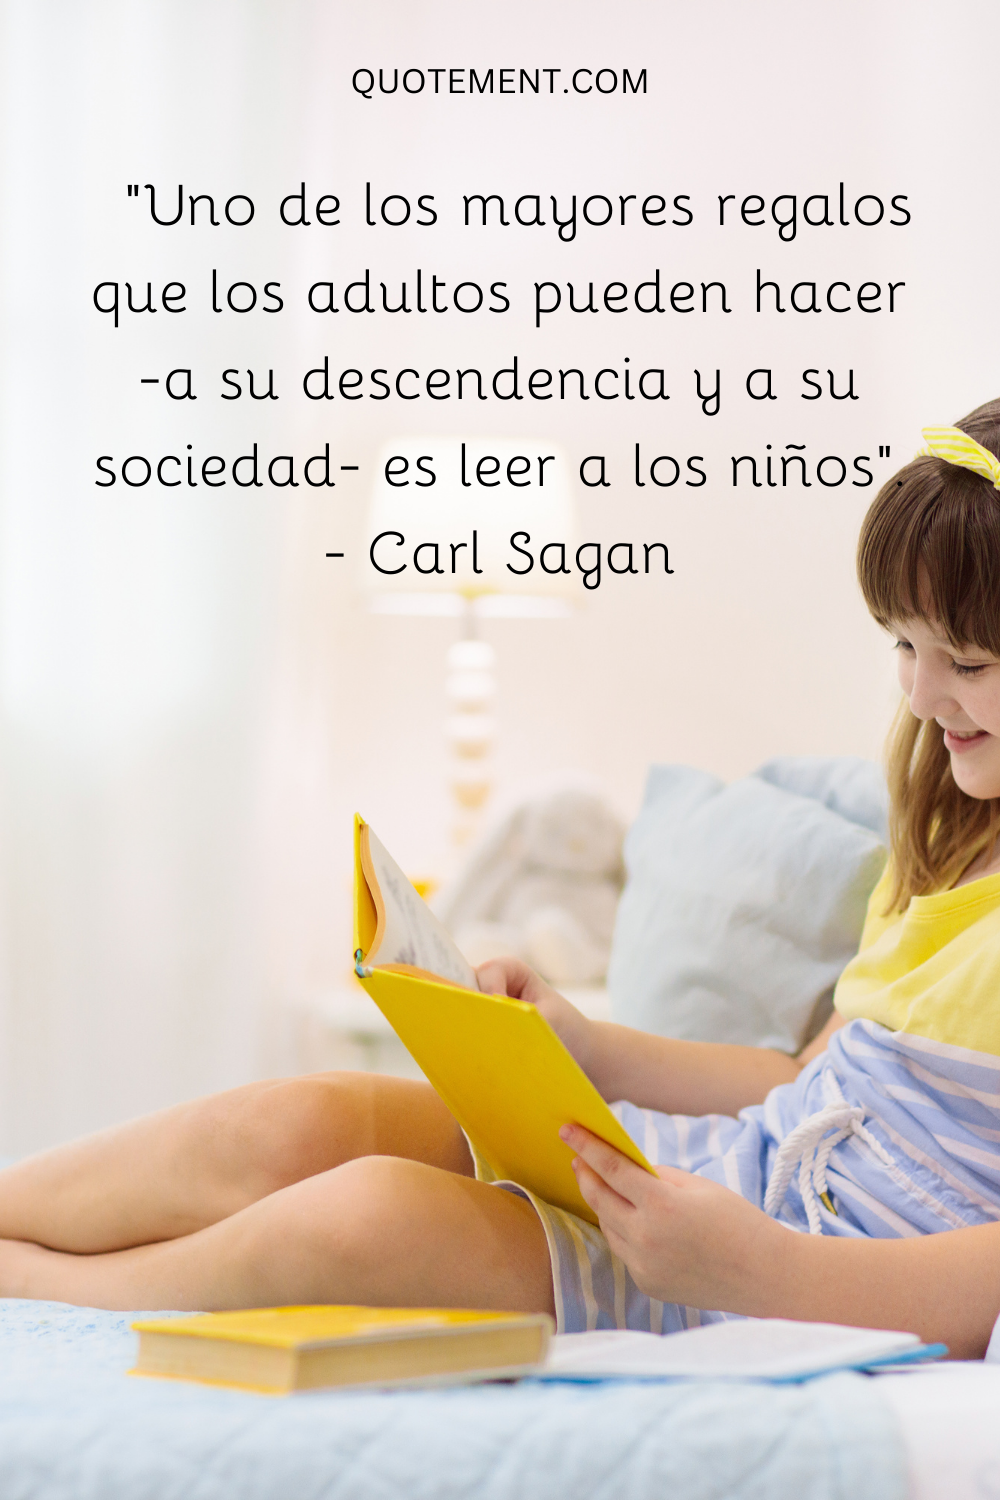 "Uno de los mayores regalos que los adultos pueden hacer -a su descendencia y a su sociedad- es leer a los niños". - Carl Sagan